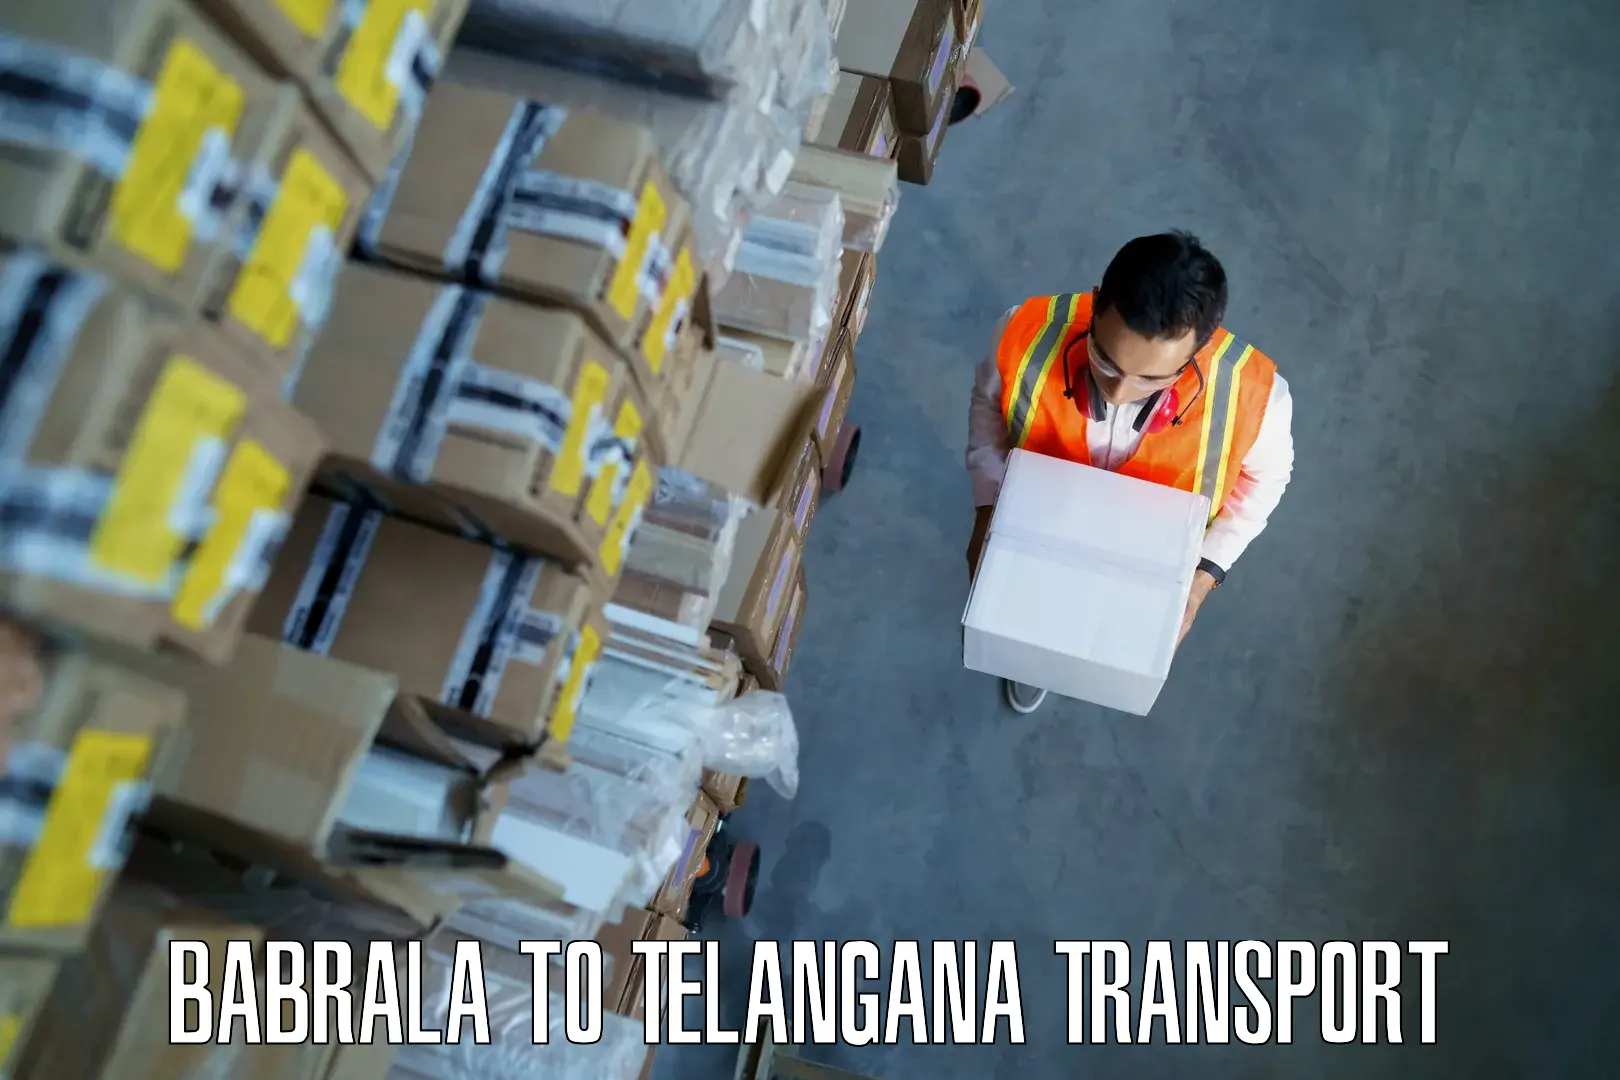 Bike shipping service Babrala to Telangana